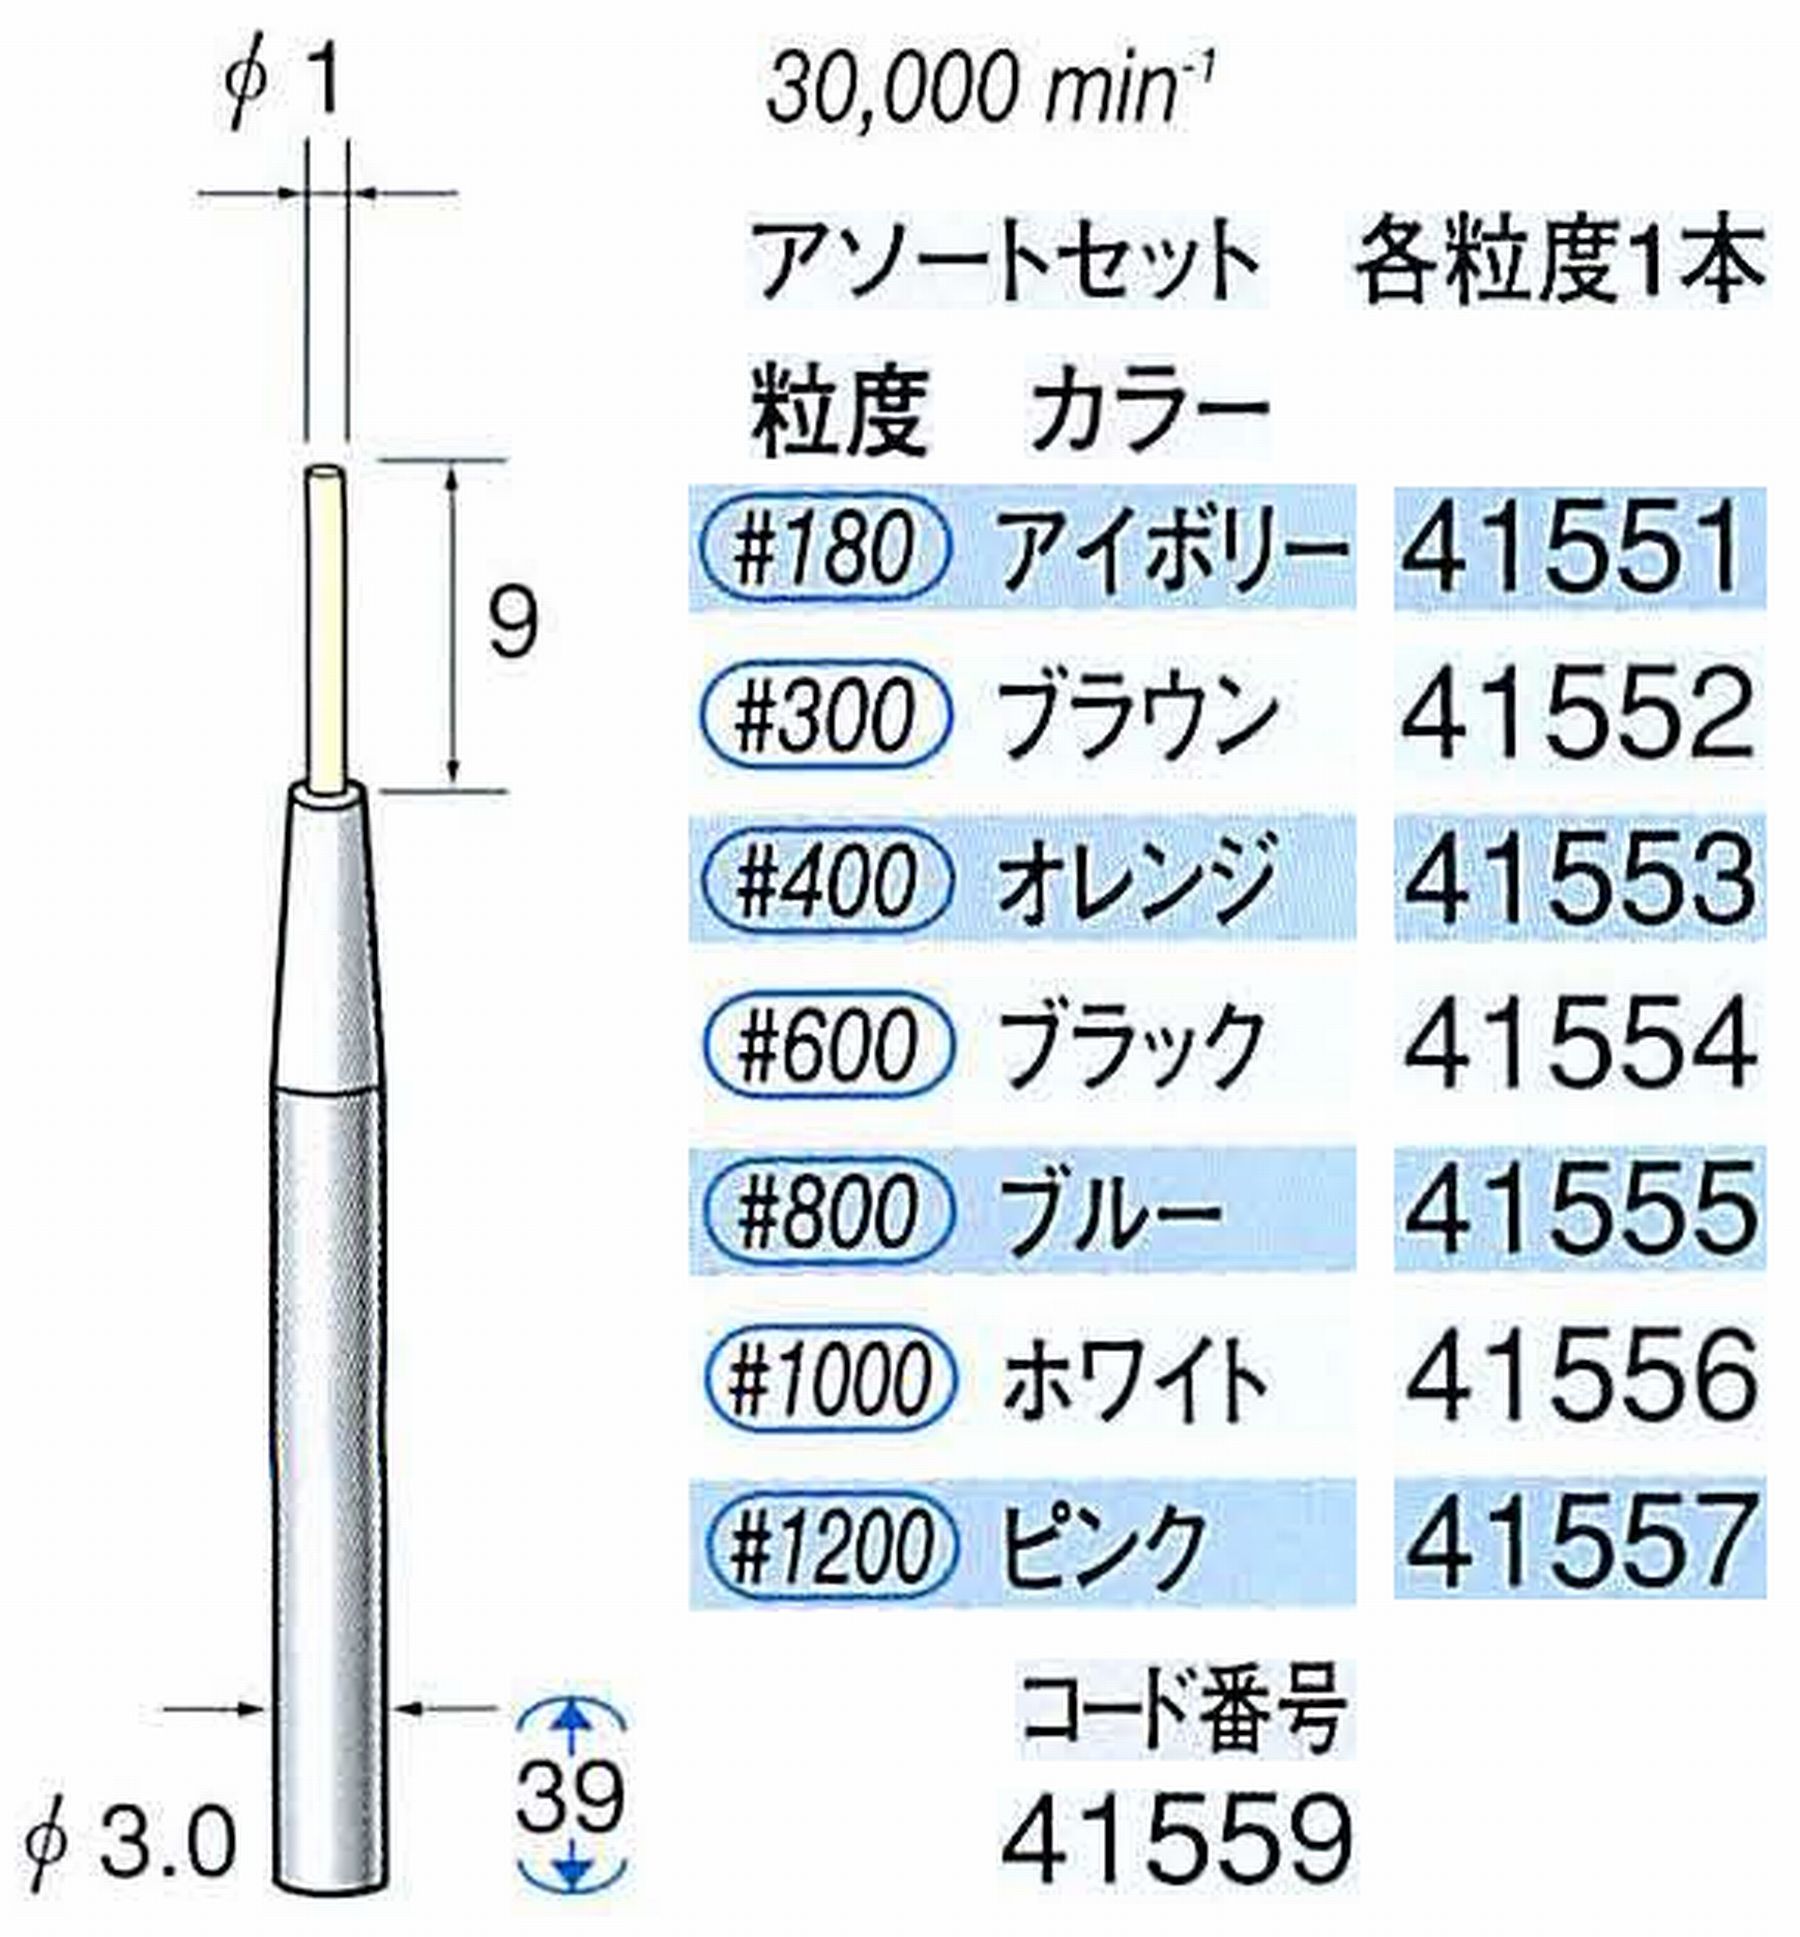 ナカニシ/NAKANISHI セラファイバー精密軸付砥石 アソートセット(各粒度1本) 軸径(シャンク) φ3.0mm 41559